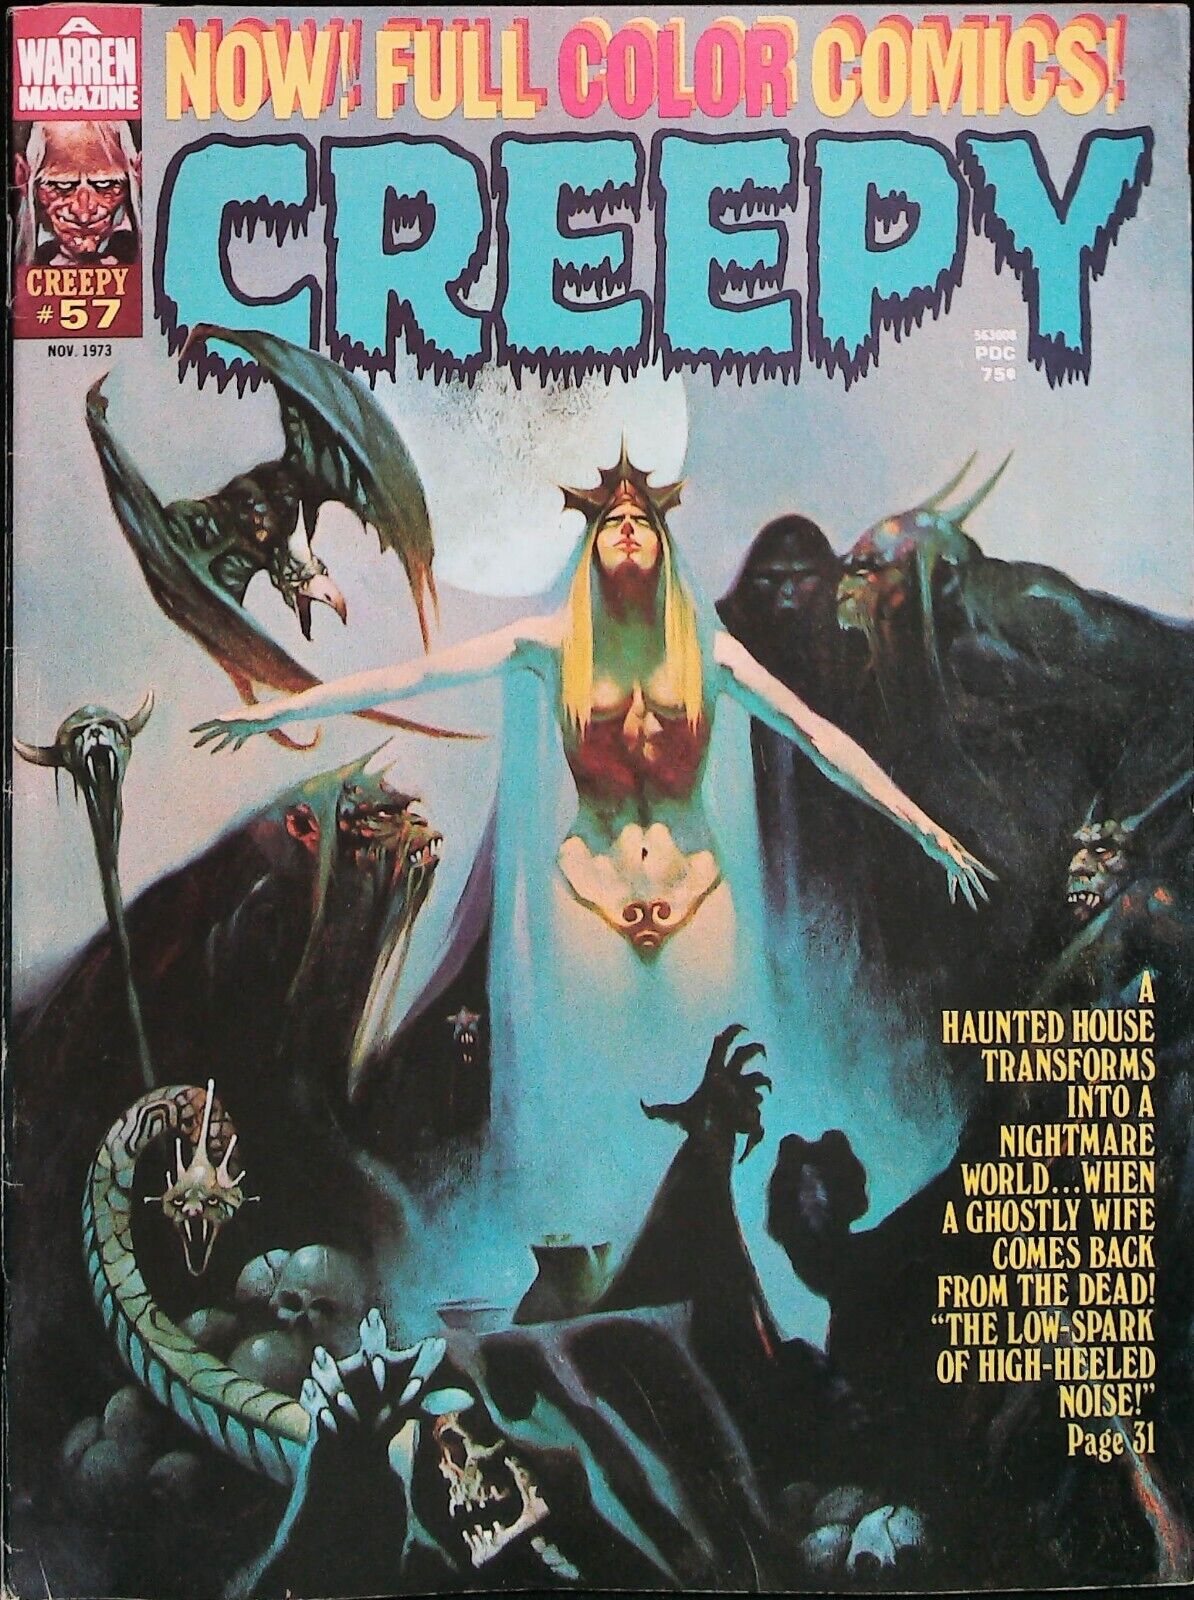 Creepy Magazine (1973) Issue # 57 Very Fine Range